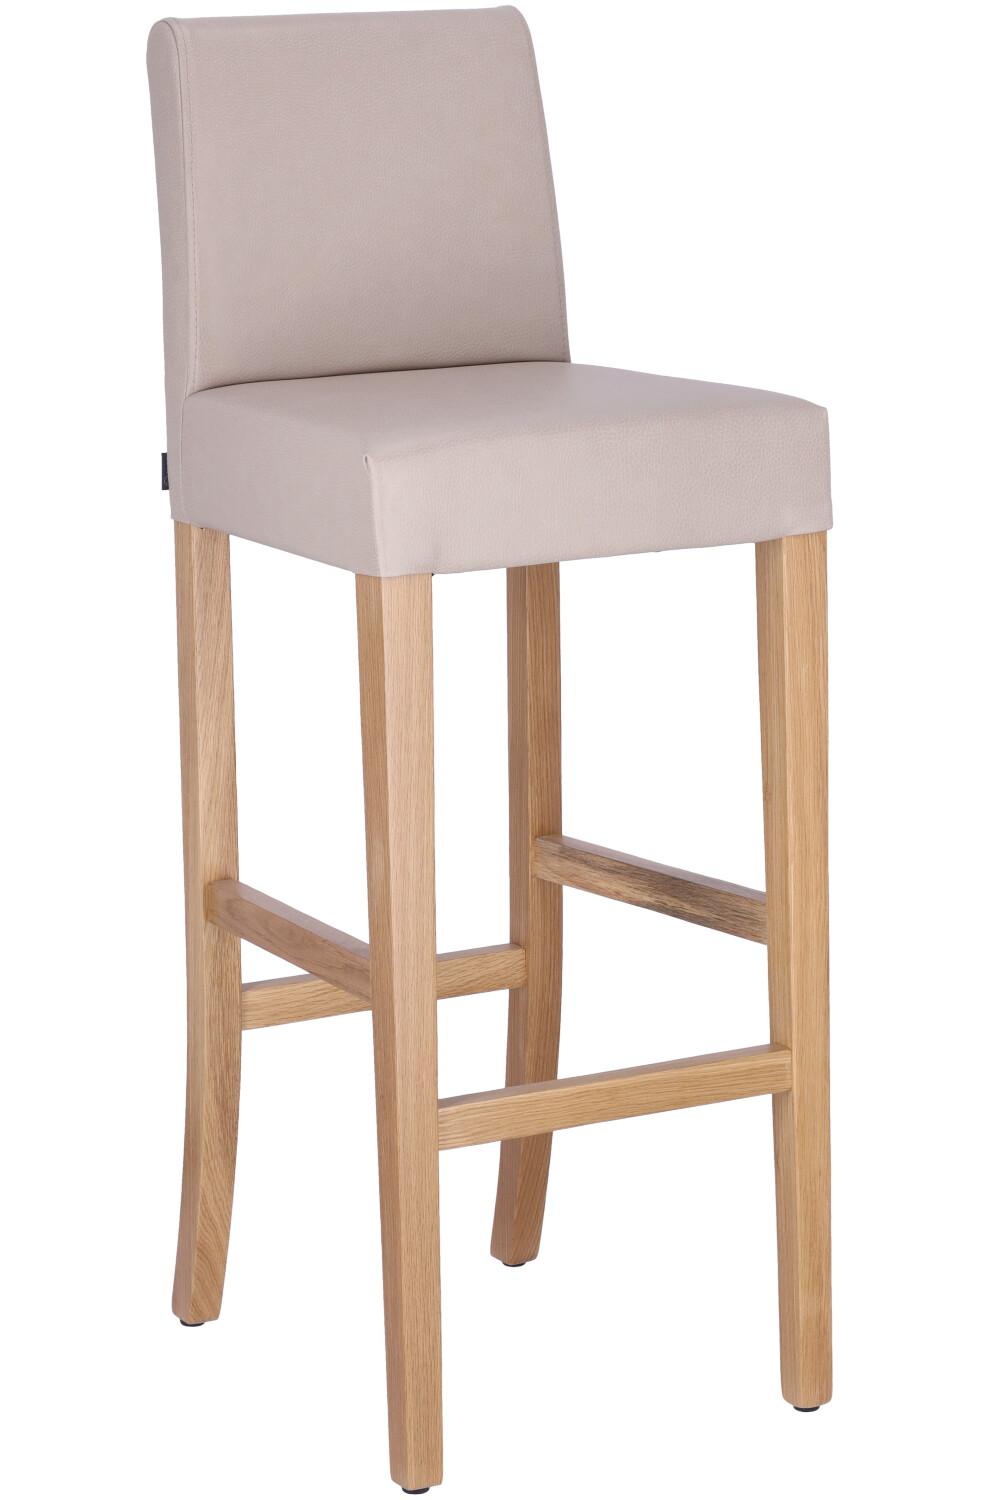 bar stool DebbyKD